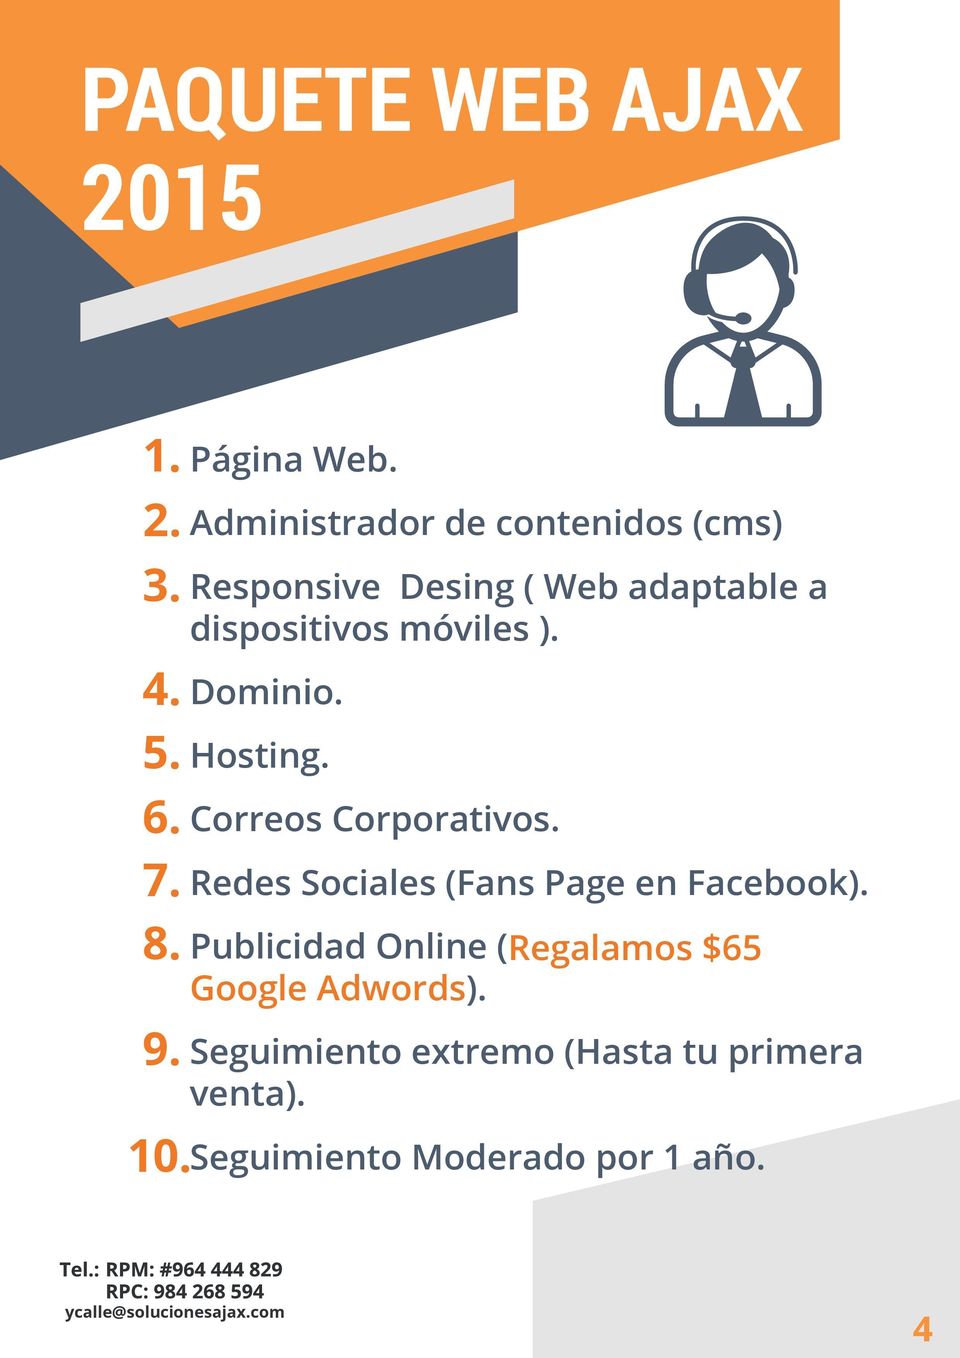 ). Dominio. Hosting. Correos Corporativos. Redes Sociales (Fans Page en Facebook).